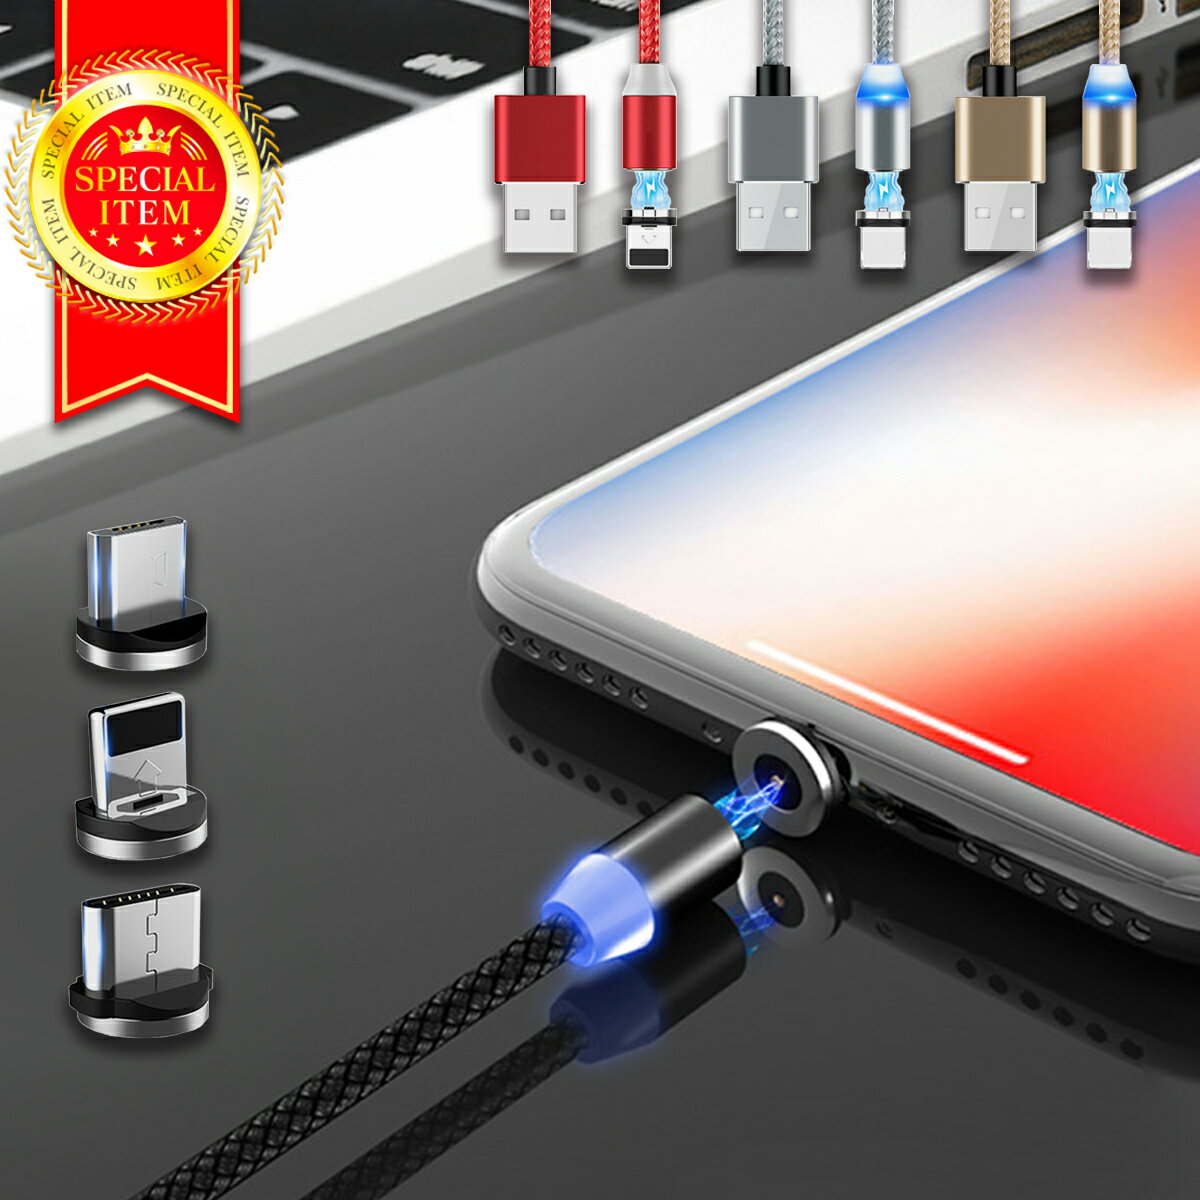 マグネット式 3in1 充電ケーブル iPhone Android Type-C Micro USB 充電器 端子ホルダー付き 高耐久 ポイント消化